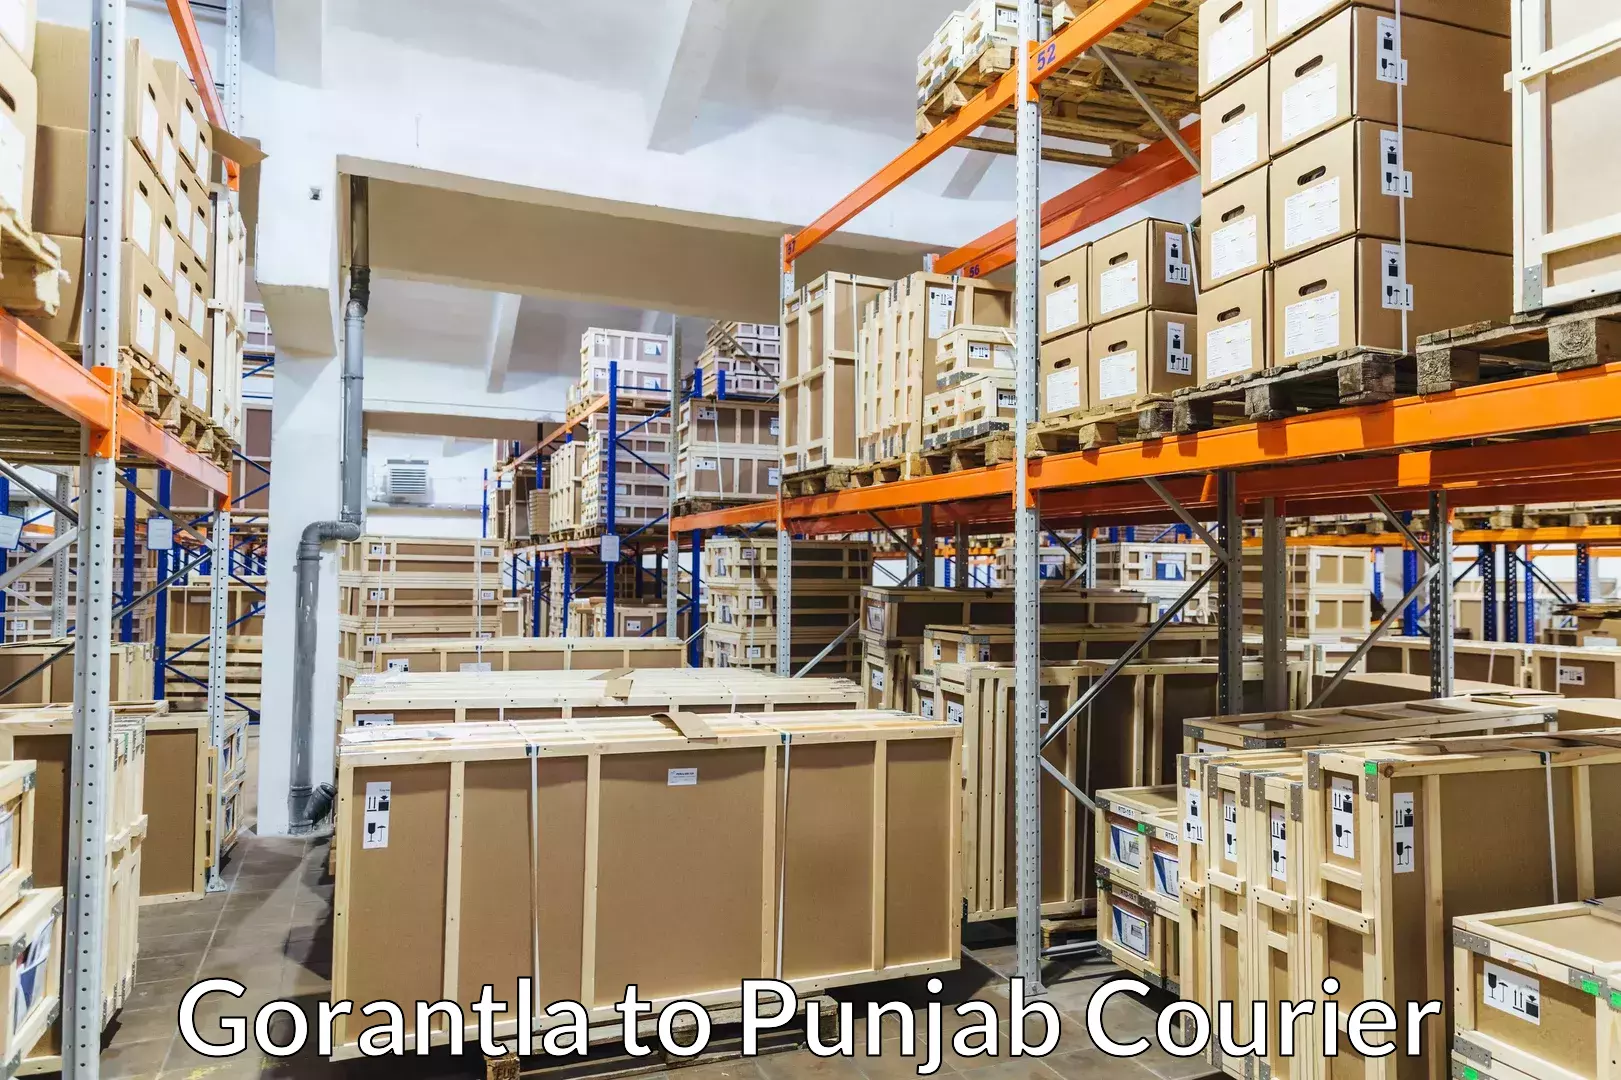 Full-service movers Gorantla to Central University of Punjab Bathinda